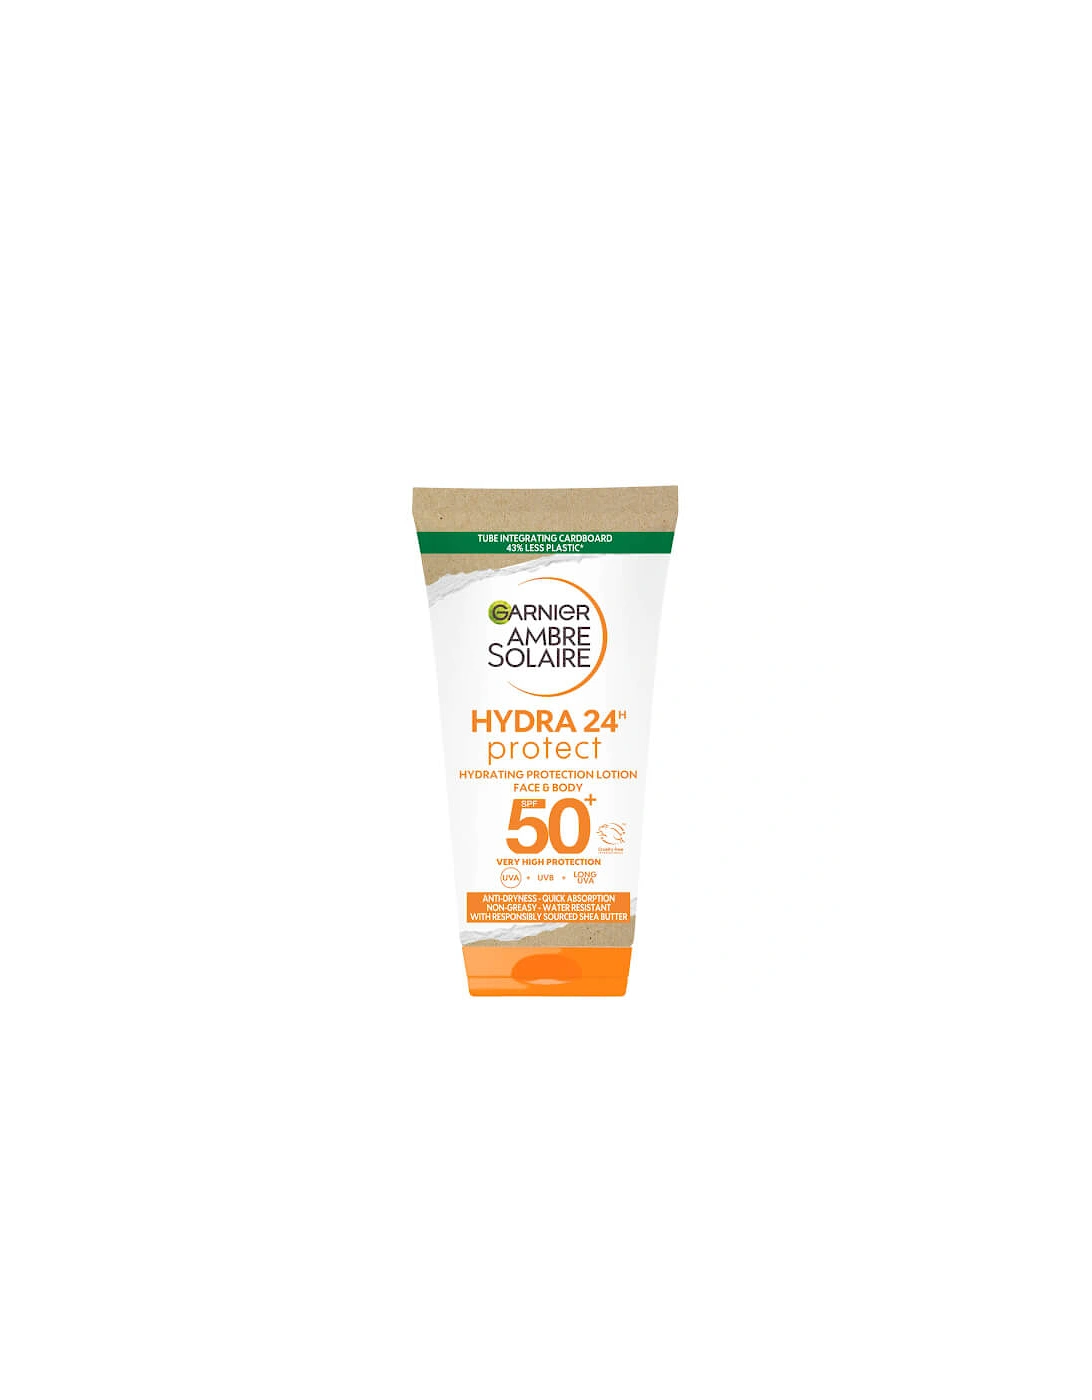 Ambre Solaire Ultra-Hydrating Sun Cream SPF 50+ 50ml Travel Size - Garnier, 2 of 1